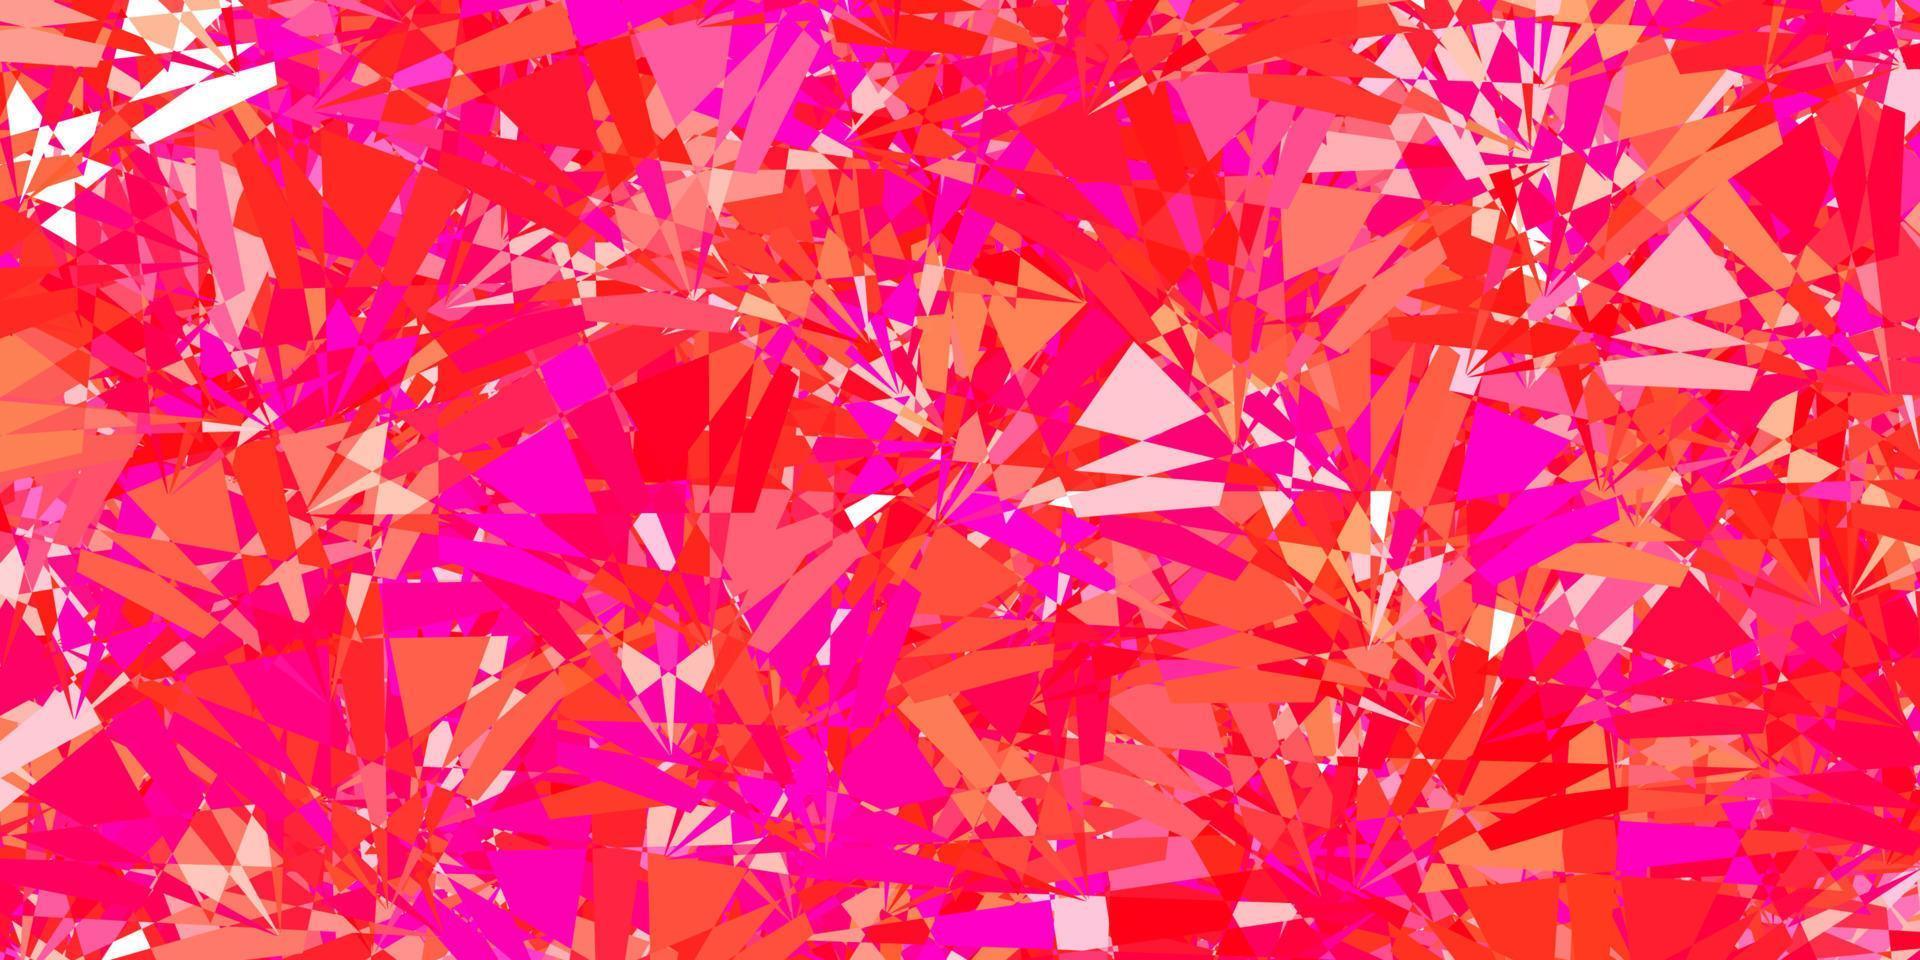 modello vettoriale rosa chiaro con forme triangolari.